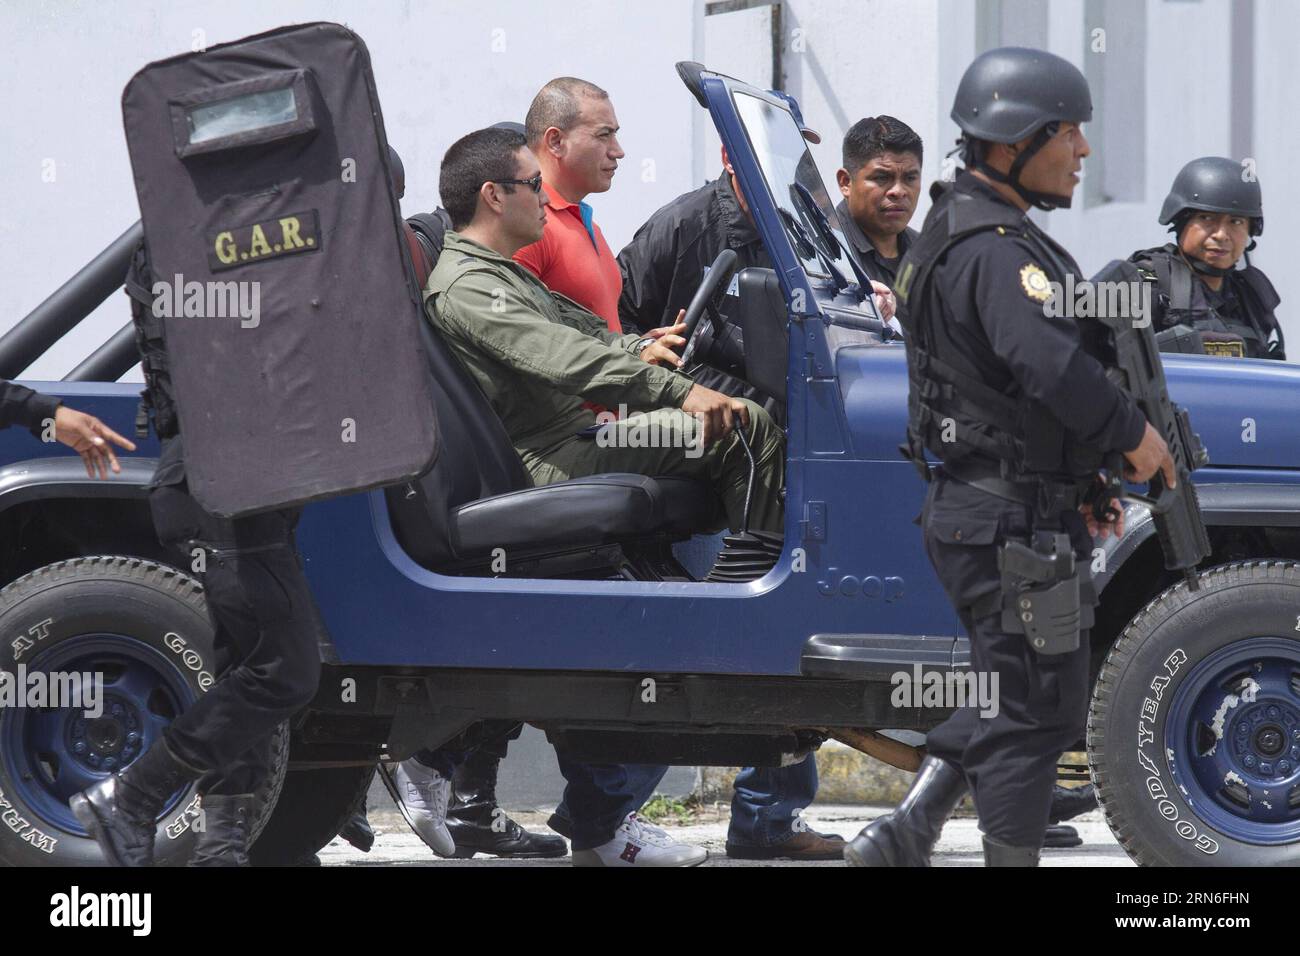 Mitglieder der Sicherheitskräfte begleiten den mutmaßlichen Drogenhändler Jairo Estuardo Orellana (C, zurück) während seiner Auslieferung in den Einrichtungen der guatemaltekischen Luftwaffe in Guatemala City, Hauptstadt von Guatemala, am 24. Juli 2015. Der mutmaßliche Drogenhändler Jairo Estuardo Orellana wurde in die Vereinigten Staaten ausgeliefert und steht vor der Anklage als Hauptlieferant von Kokain des mexikanischen Drogenkartells Los Zetas und Verschwörung für den Drogenhandel in Richtung amerikanisches Territorium. Luis Echeverria) (jg) GUATEMALA-GUATEMALA-STADT-SICHERHEITS-AUSLIEFERUNG und LuisxEcheverria PUBLICATIONxNOTxINxCHN Sicherheitskräfte Mitglieder Stockfoto